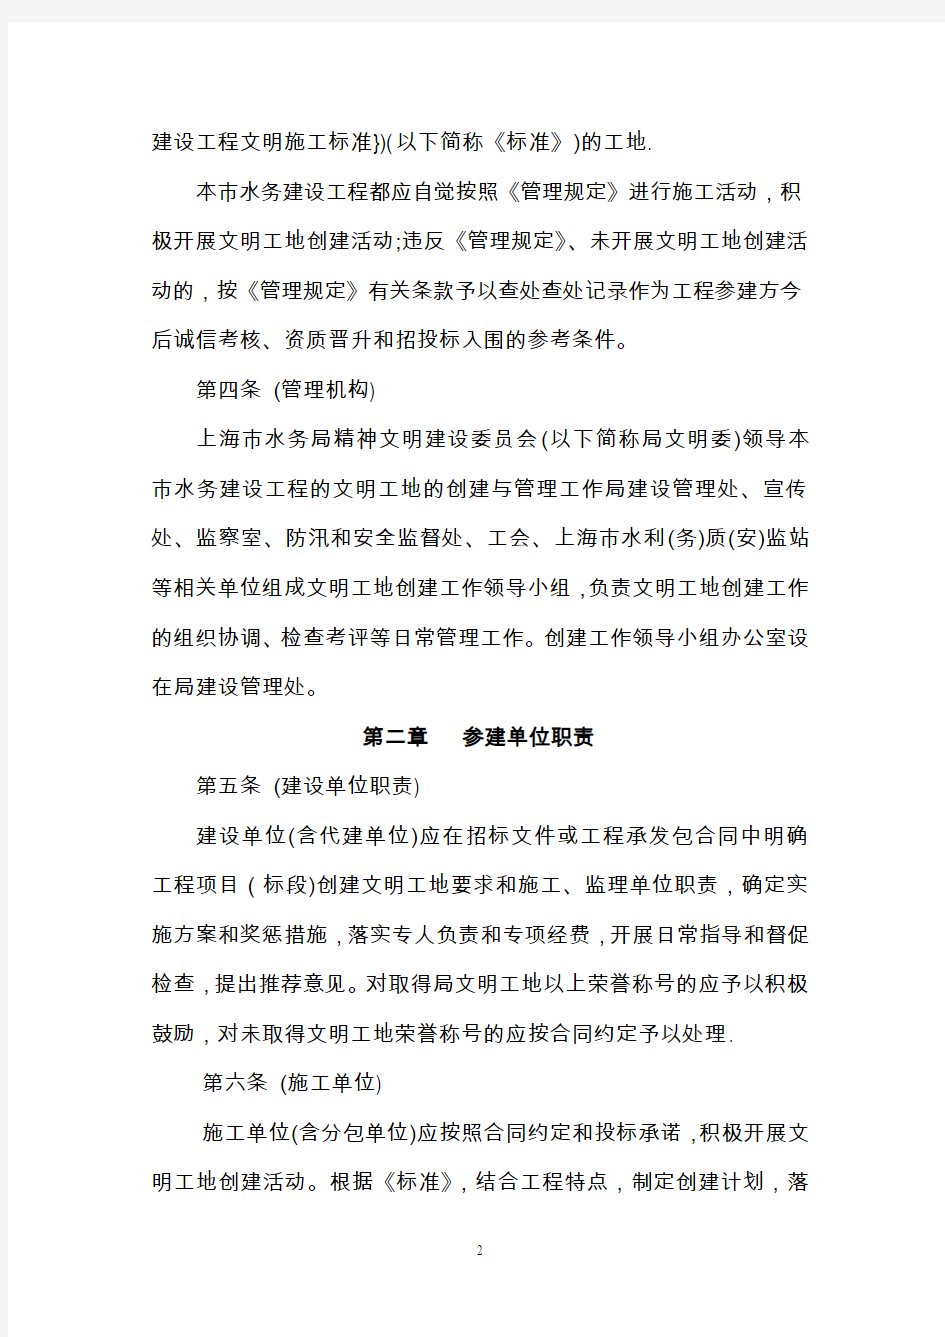 上海市水务建设工程文明工地管理实施细则(最新)